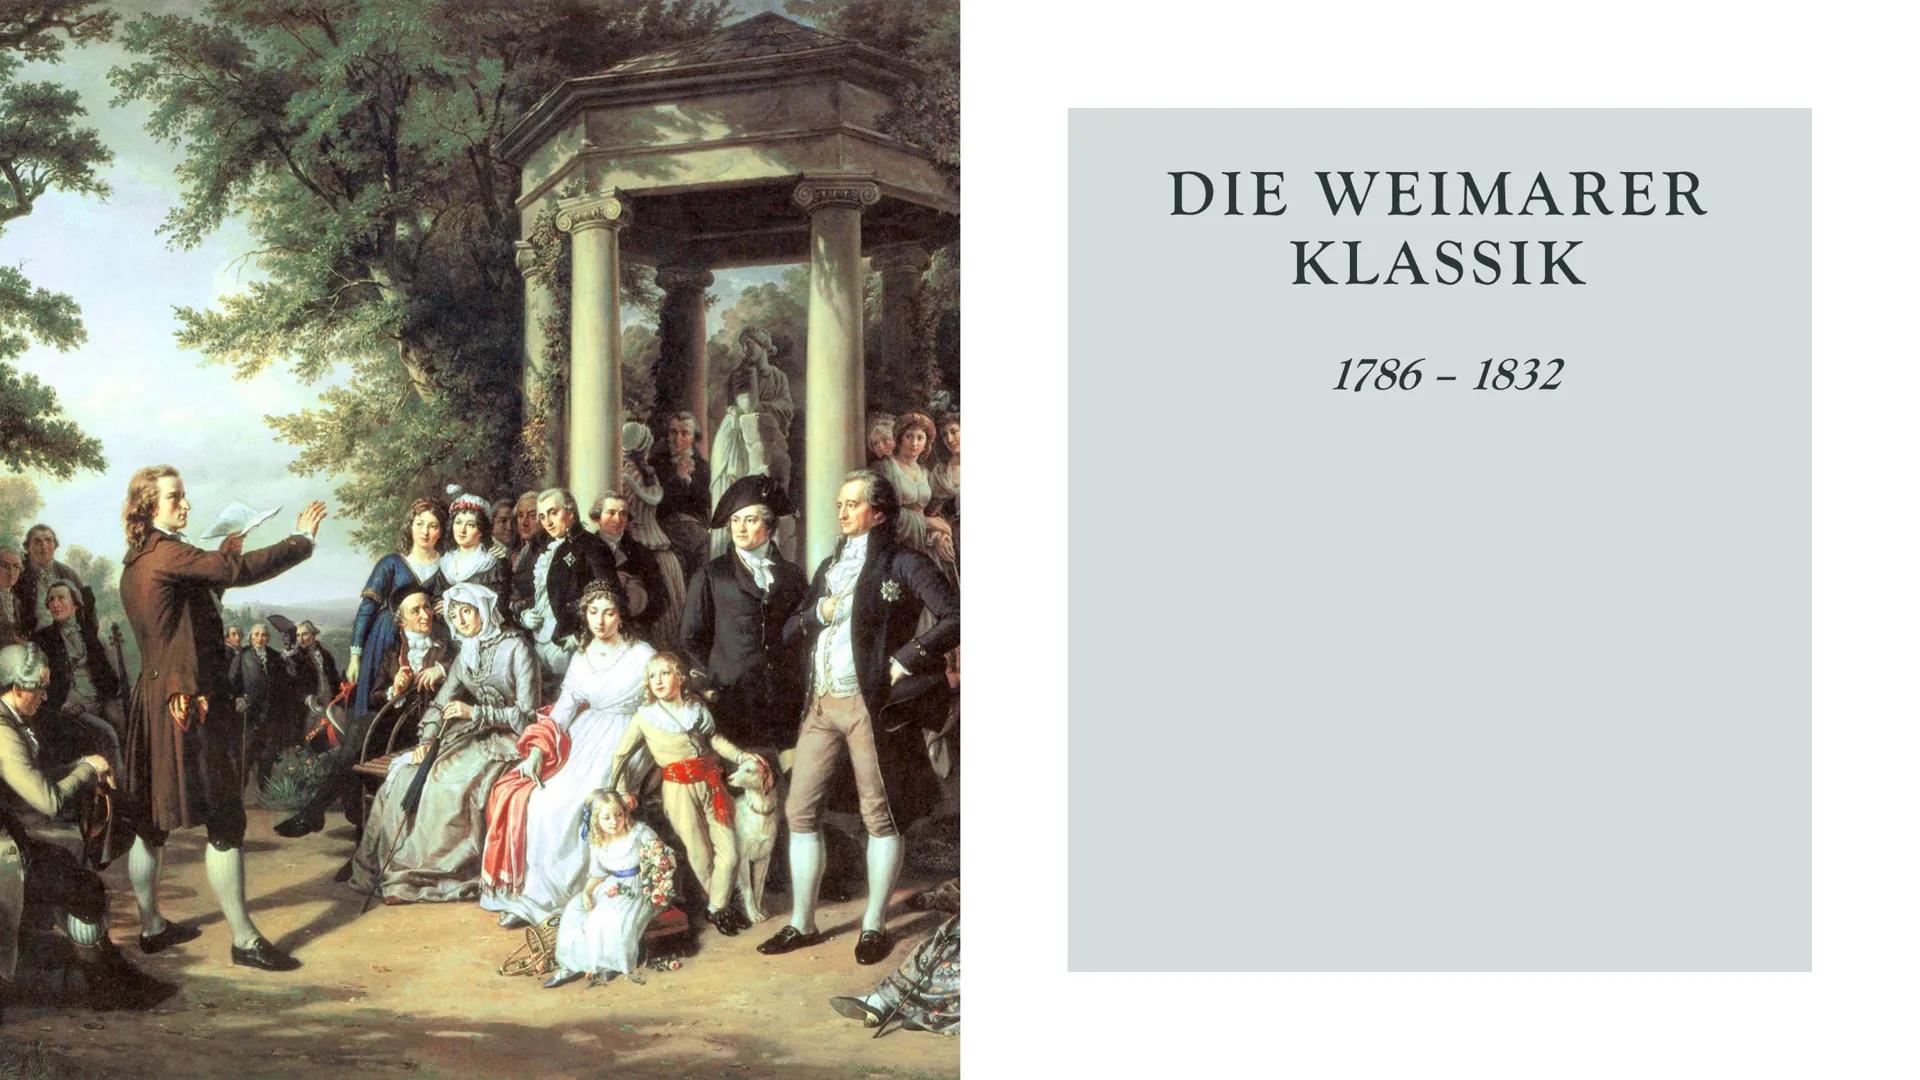 DIE WEIMARER
KLASSIK
1786-1832 ALLES WANKET, WO DER GLAUBE FEHLT."
FRIEDRICH SCHILLER: WALLENSTEINS TOD
(WICHTIGES WERK DER WEIMARER KLASSIK